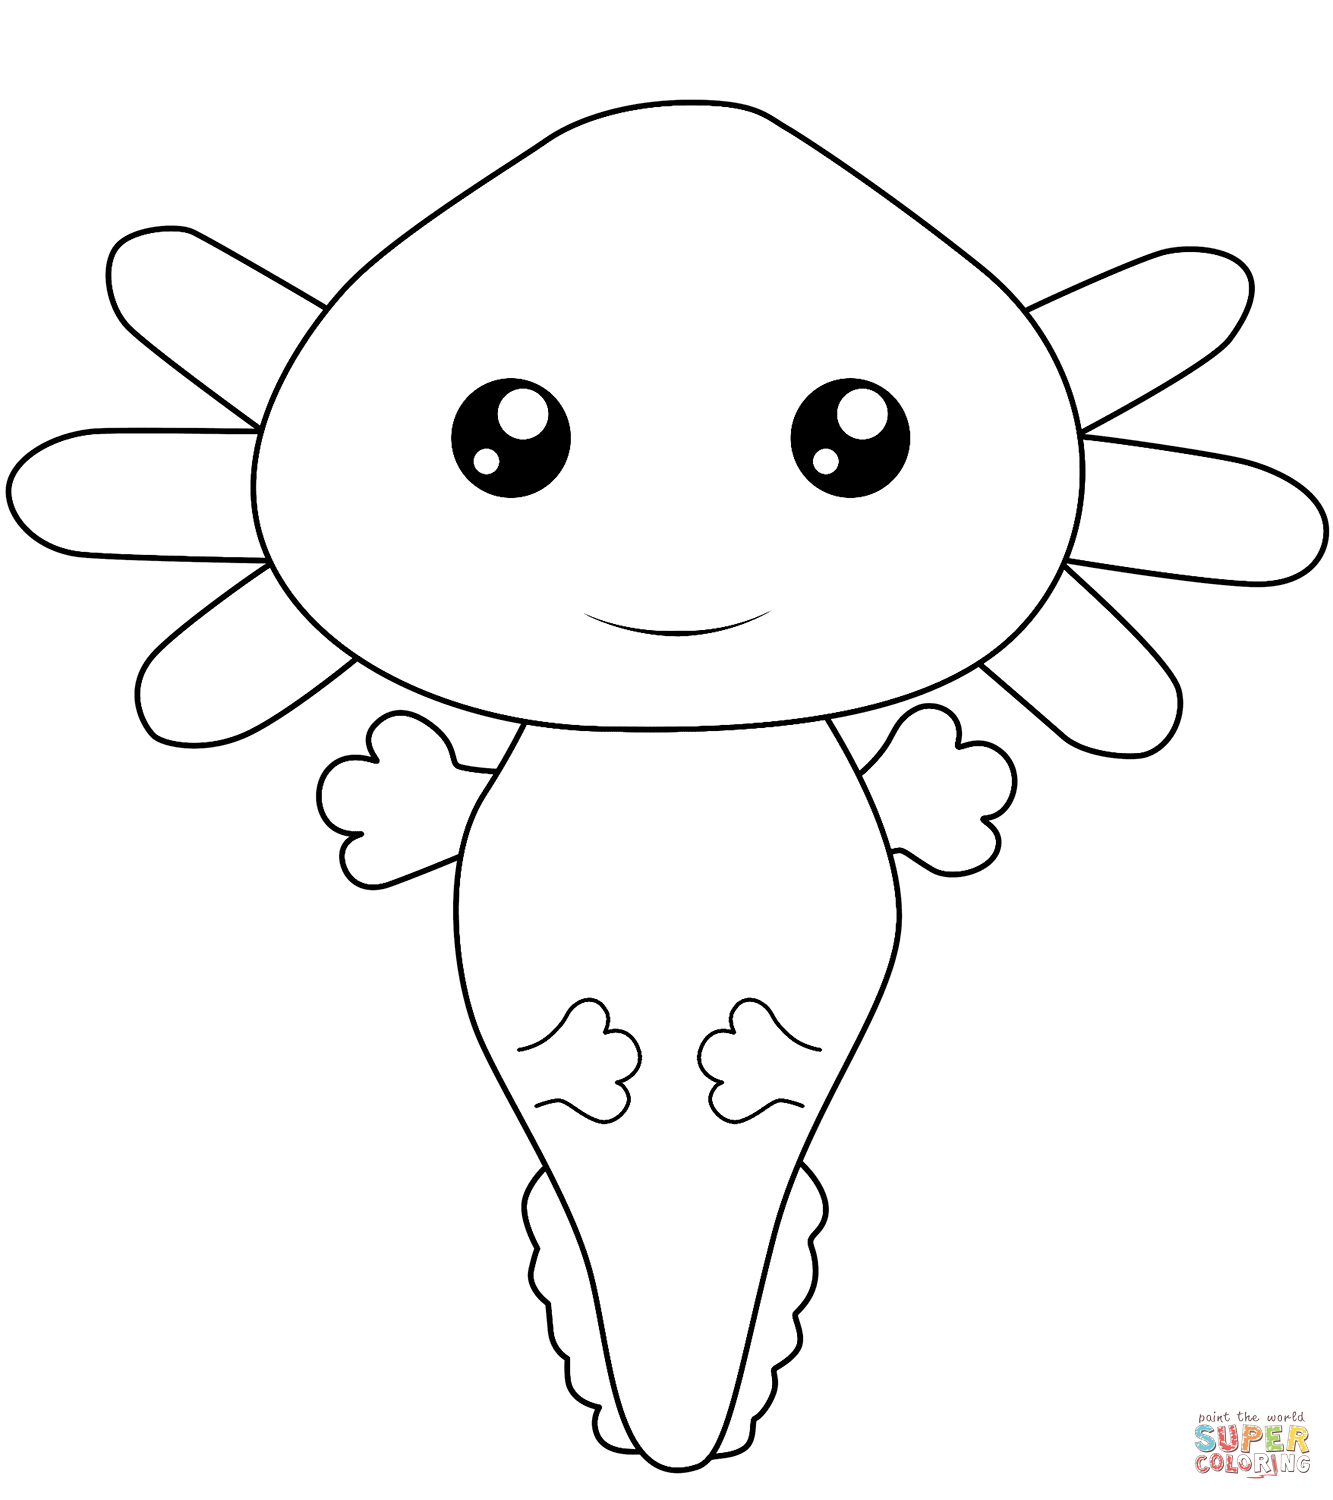 Kawaii Axolotl coloring page | Free Printable Coloring Pages